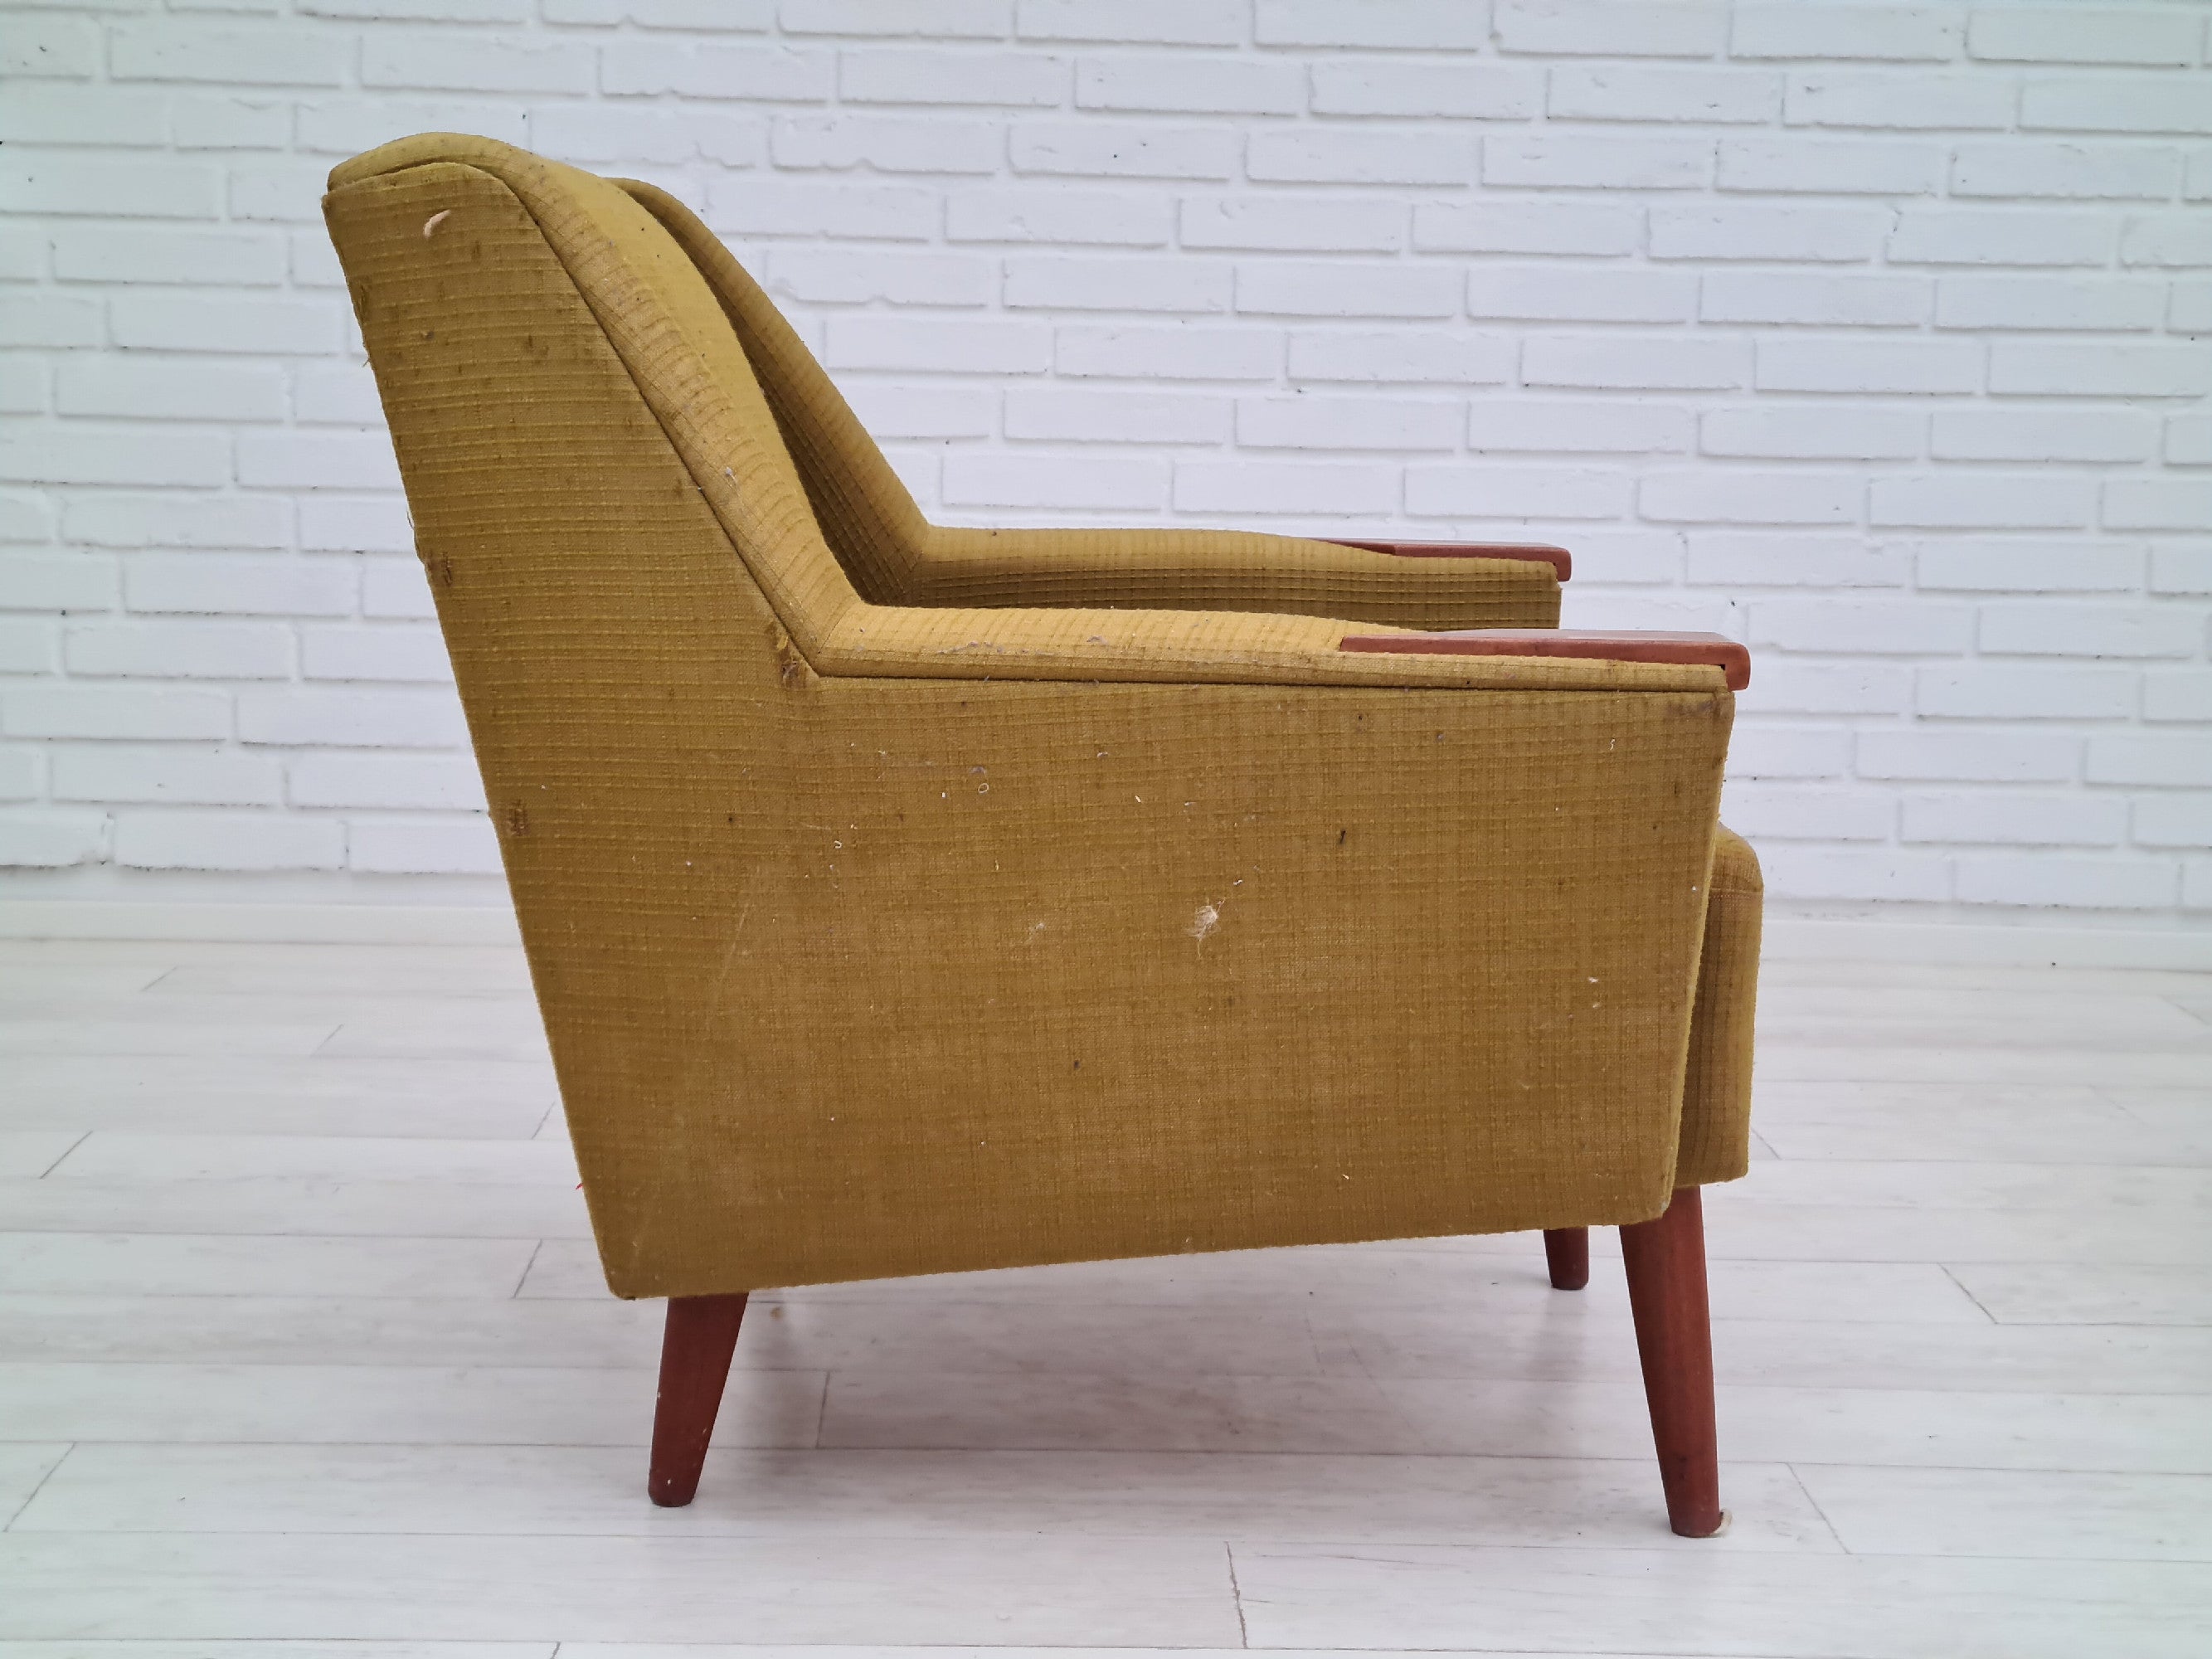 70erne, Dansk sofasæt, 3 pers. sofa, to lænestole, teaktræ, til renovering